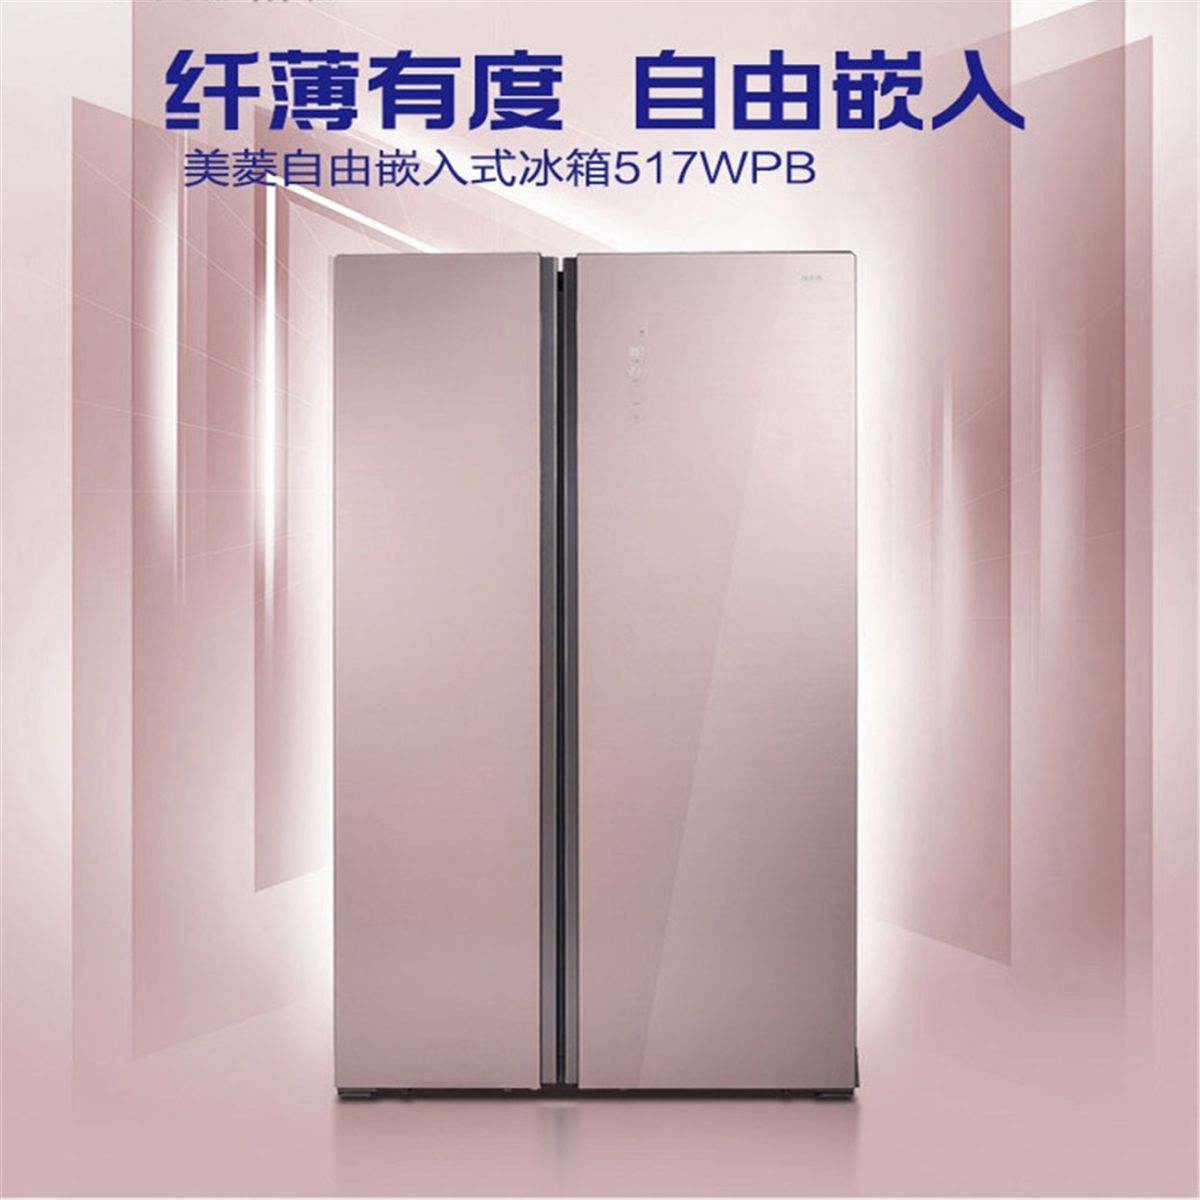 【品牌大促】美菱雅典娜651wpb/517wpb 风冷变频对开门双门电冰箱